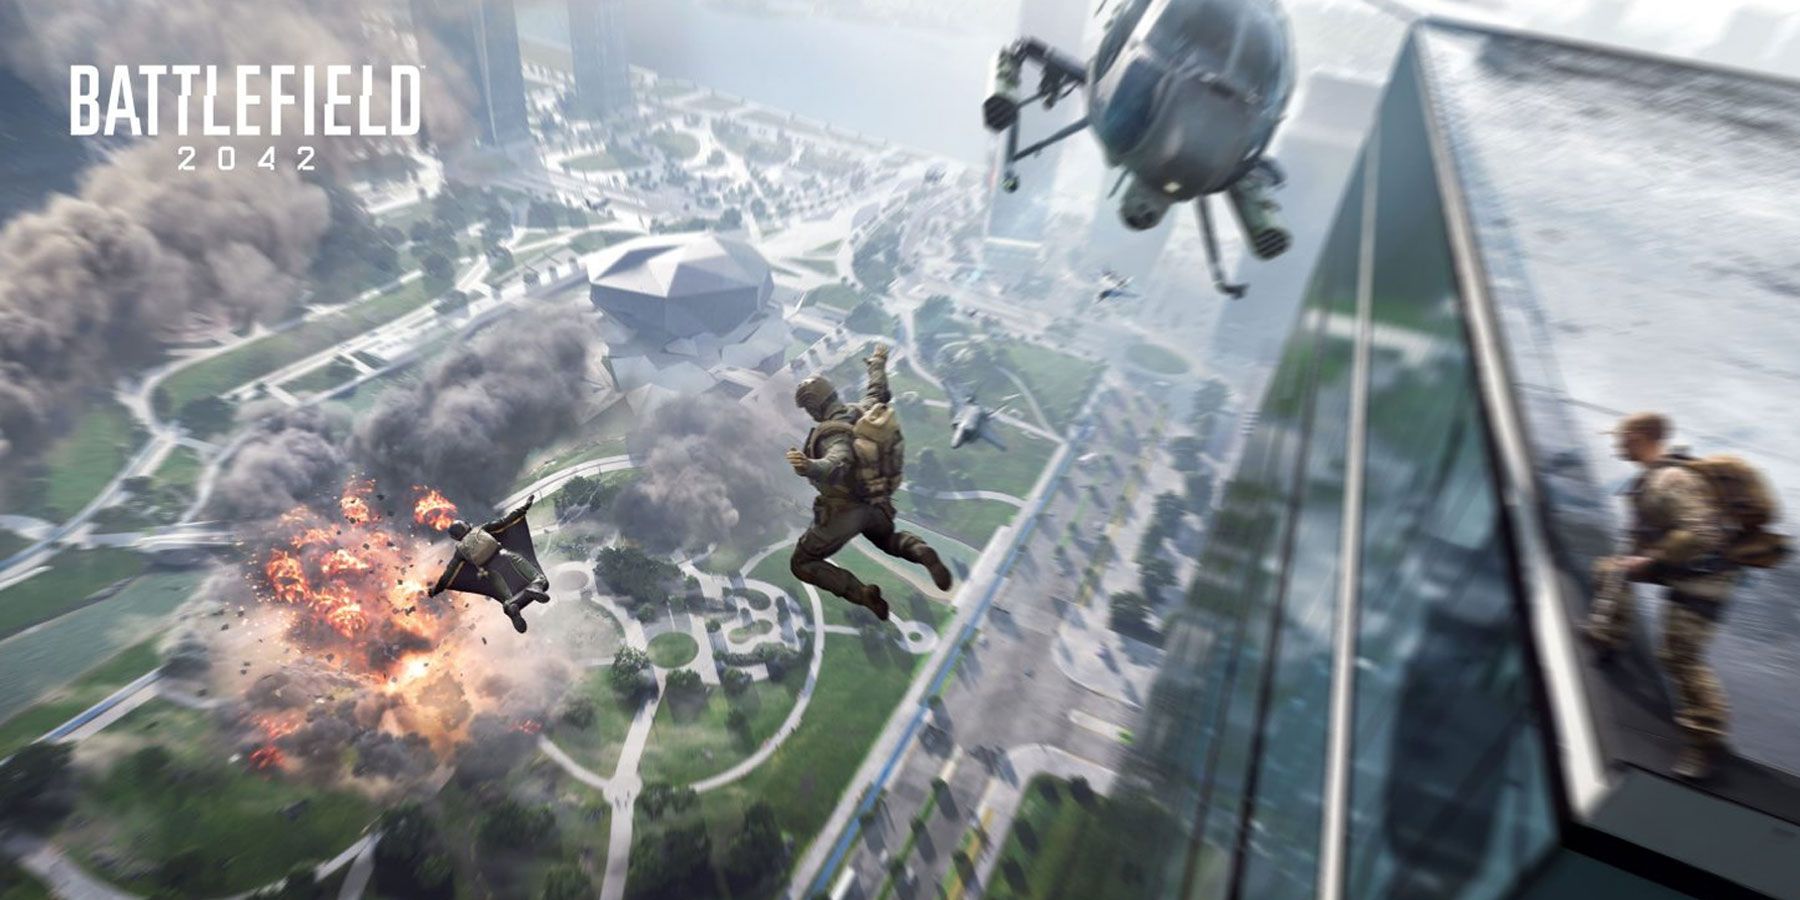 Battlefield 2042 Beta vereist Xbox Live Gold, maar niet PS Plus